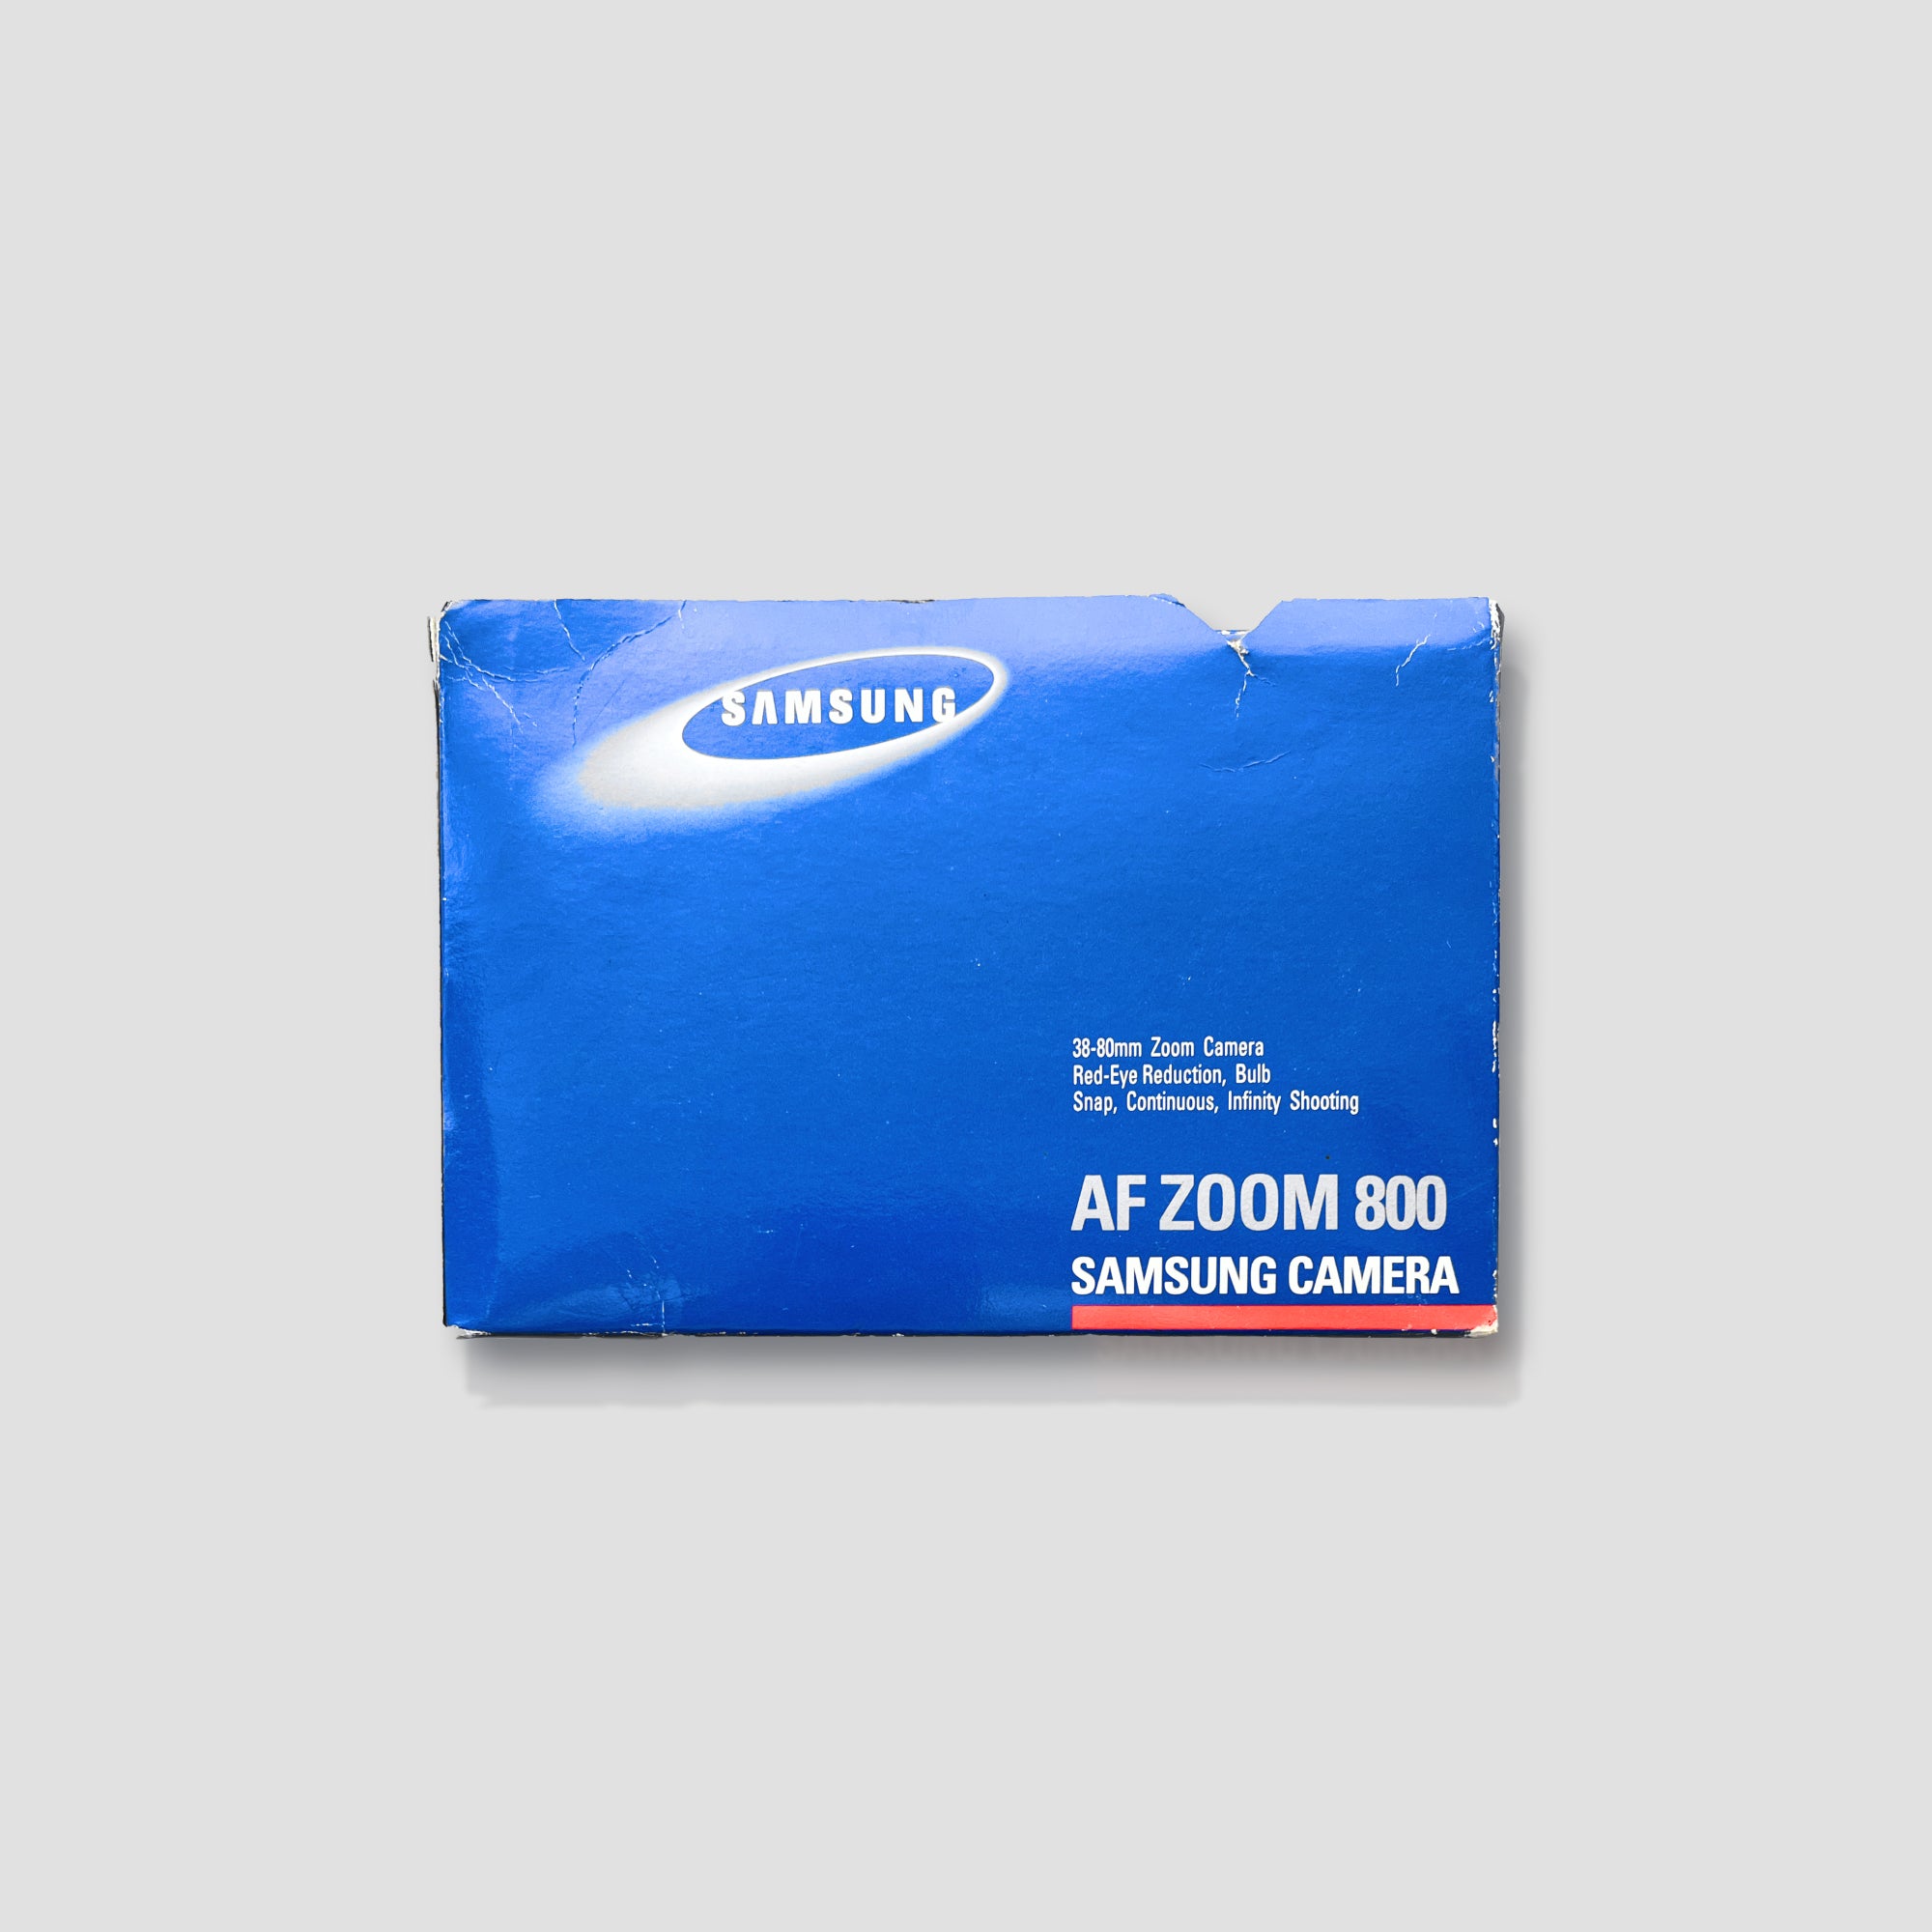 Samsung AF Zoom 800